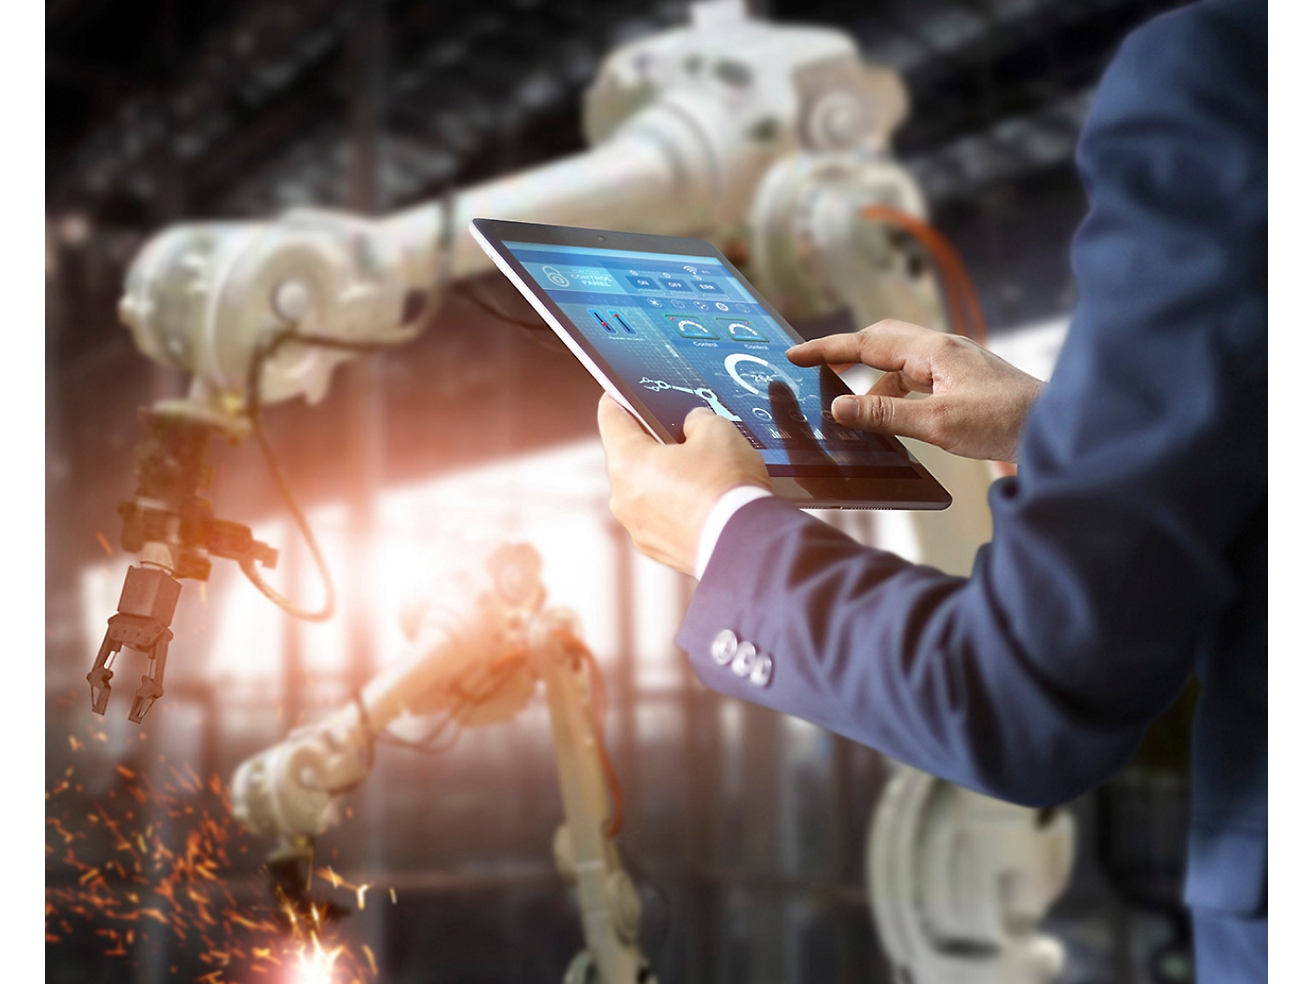 Een persoon die in een fabriek robotarmen bestuurt met gebruik van een tablet, waarmee geavanceerde automatiseringstechnologie wordt benadrukt.